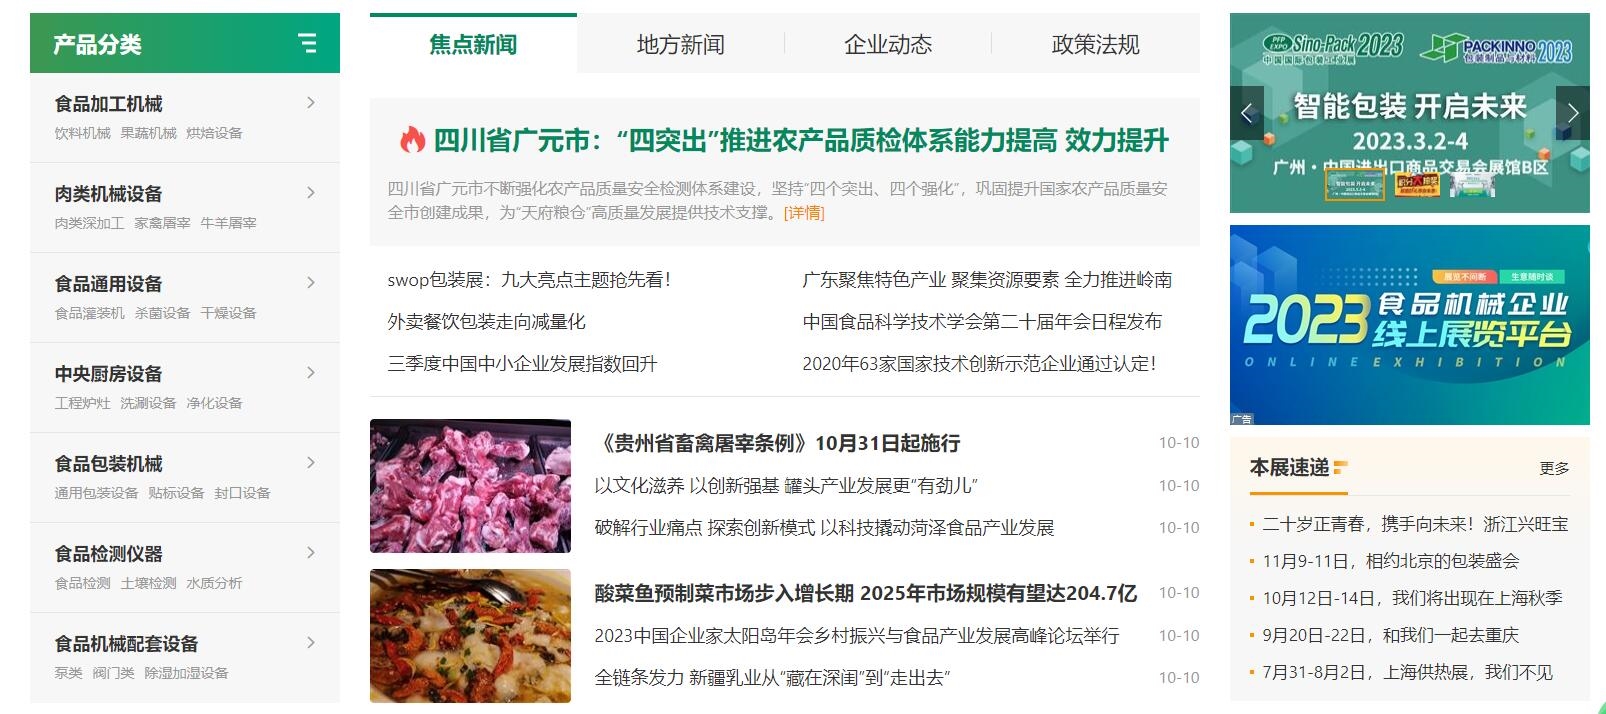 lol比赛押注平台(中国)官方网站食品机械设备网新版首页正式上线(图2)